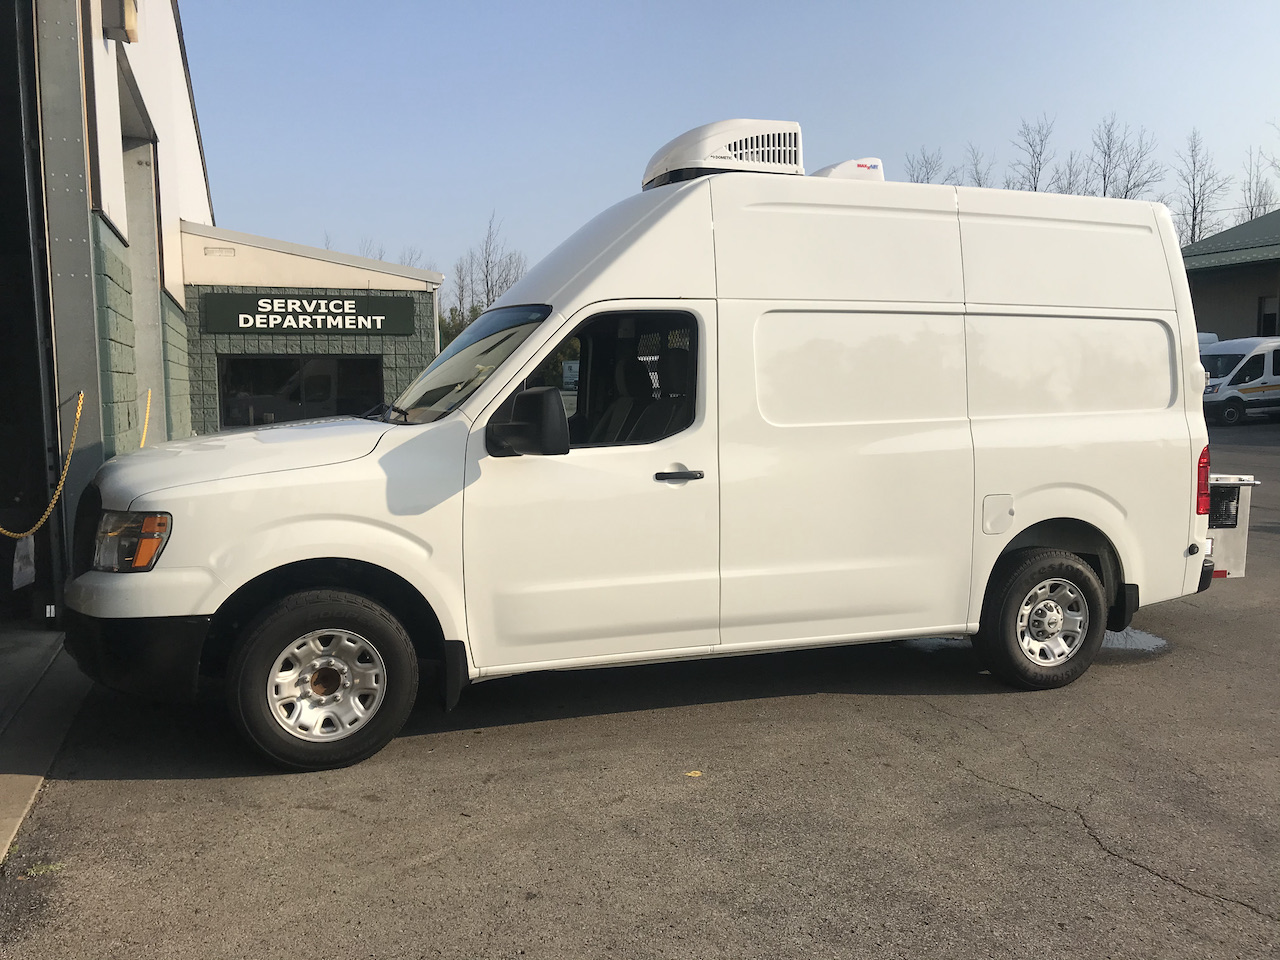 Mobile-Dog-Grooming-Van-45